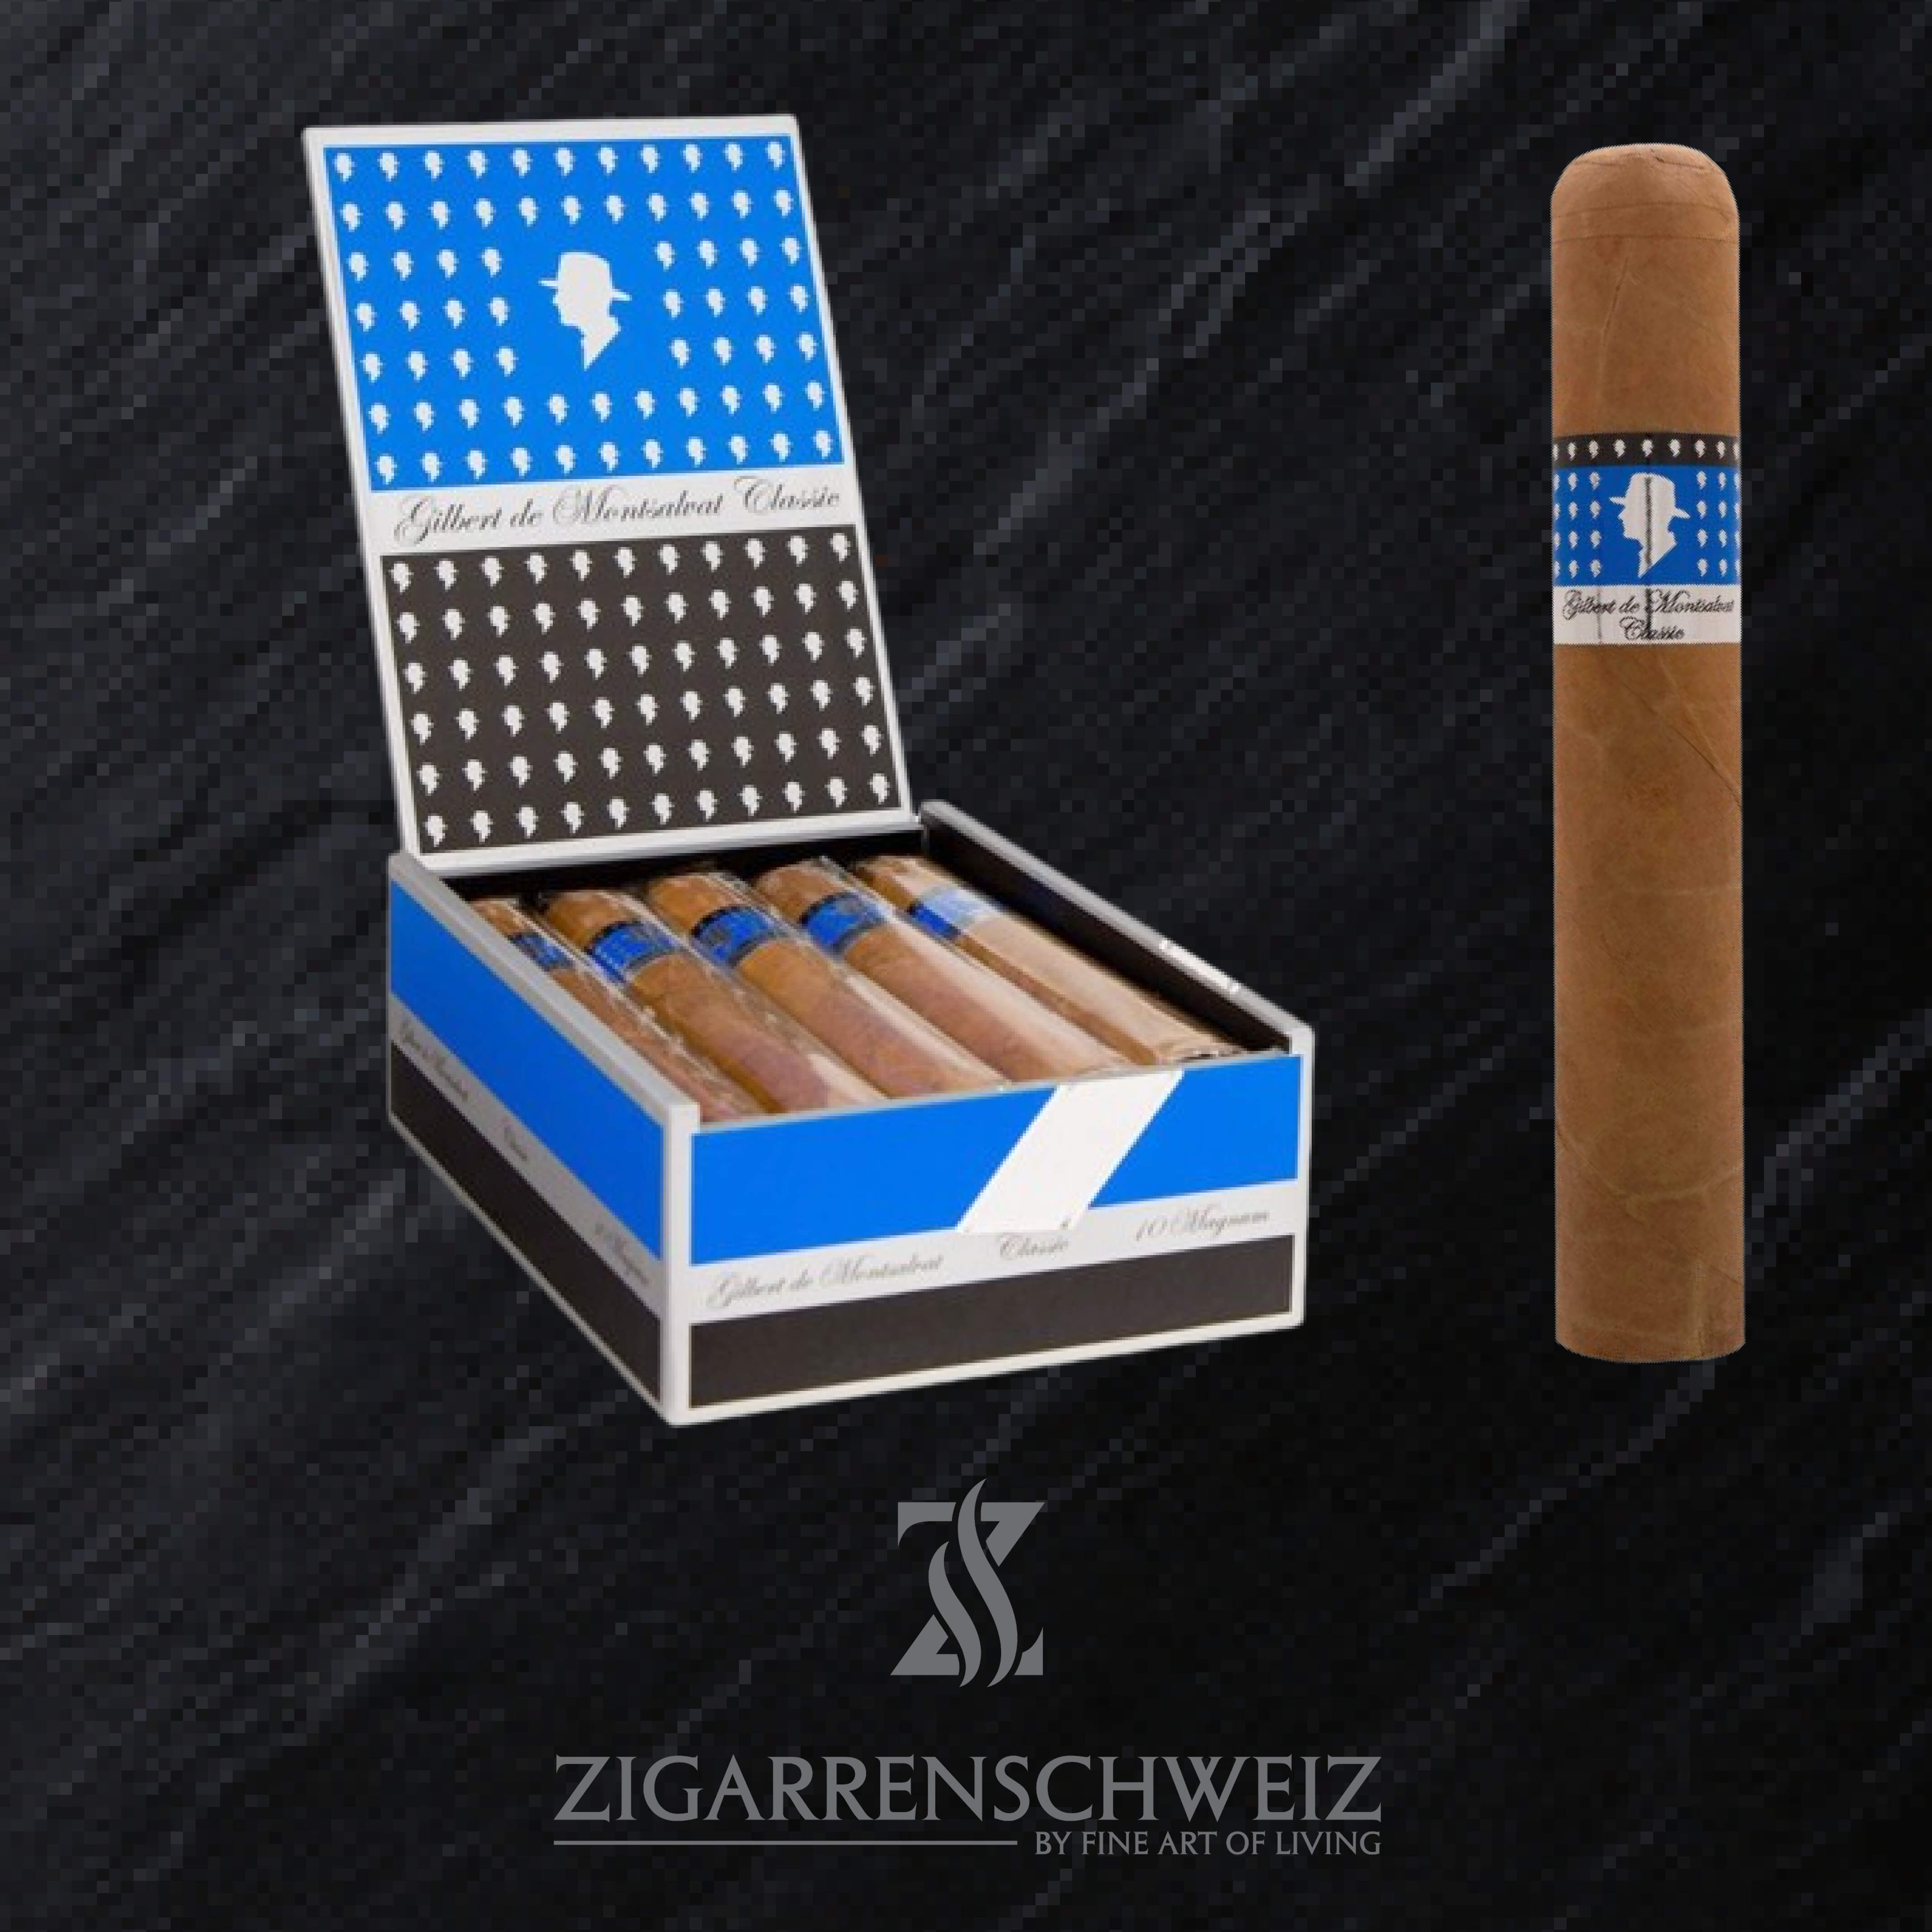 Gilbert de Montsalvat Classic Magnum Zigarren Kiste offen